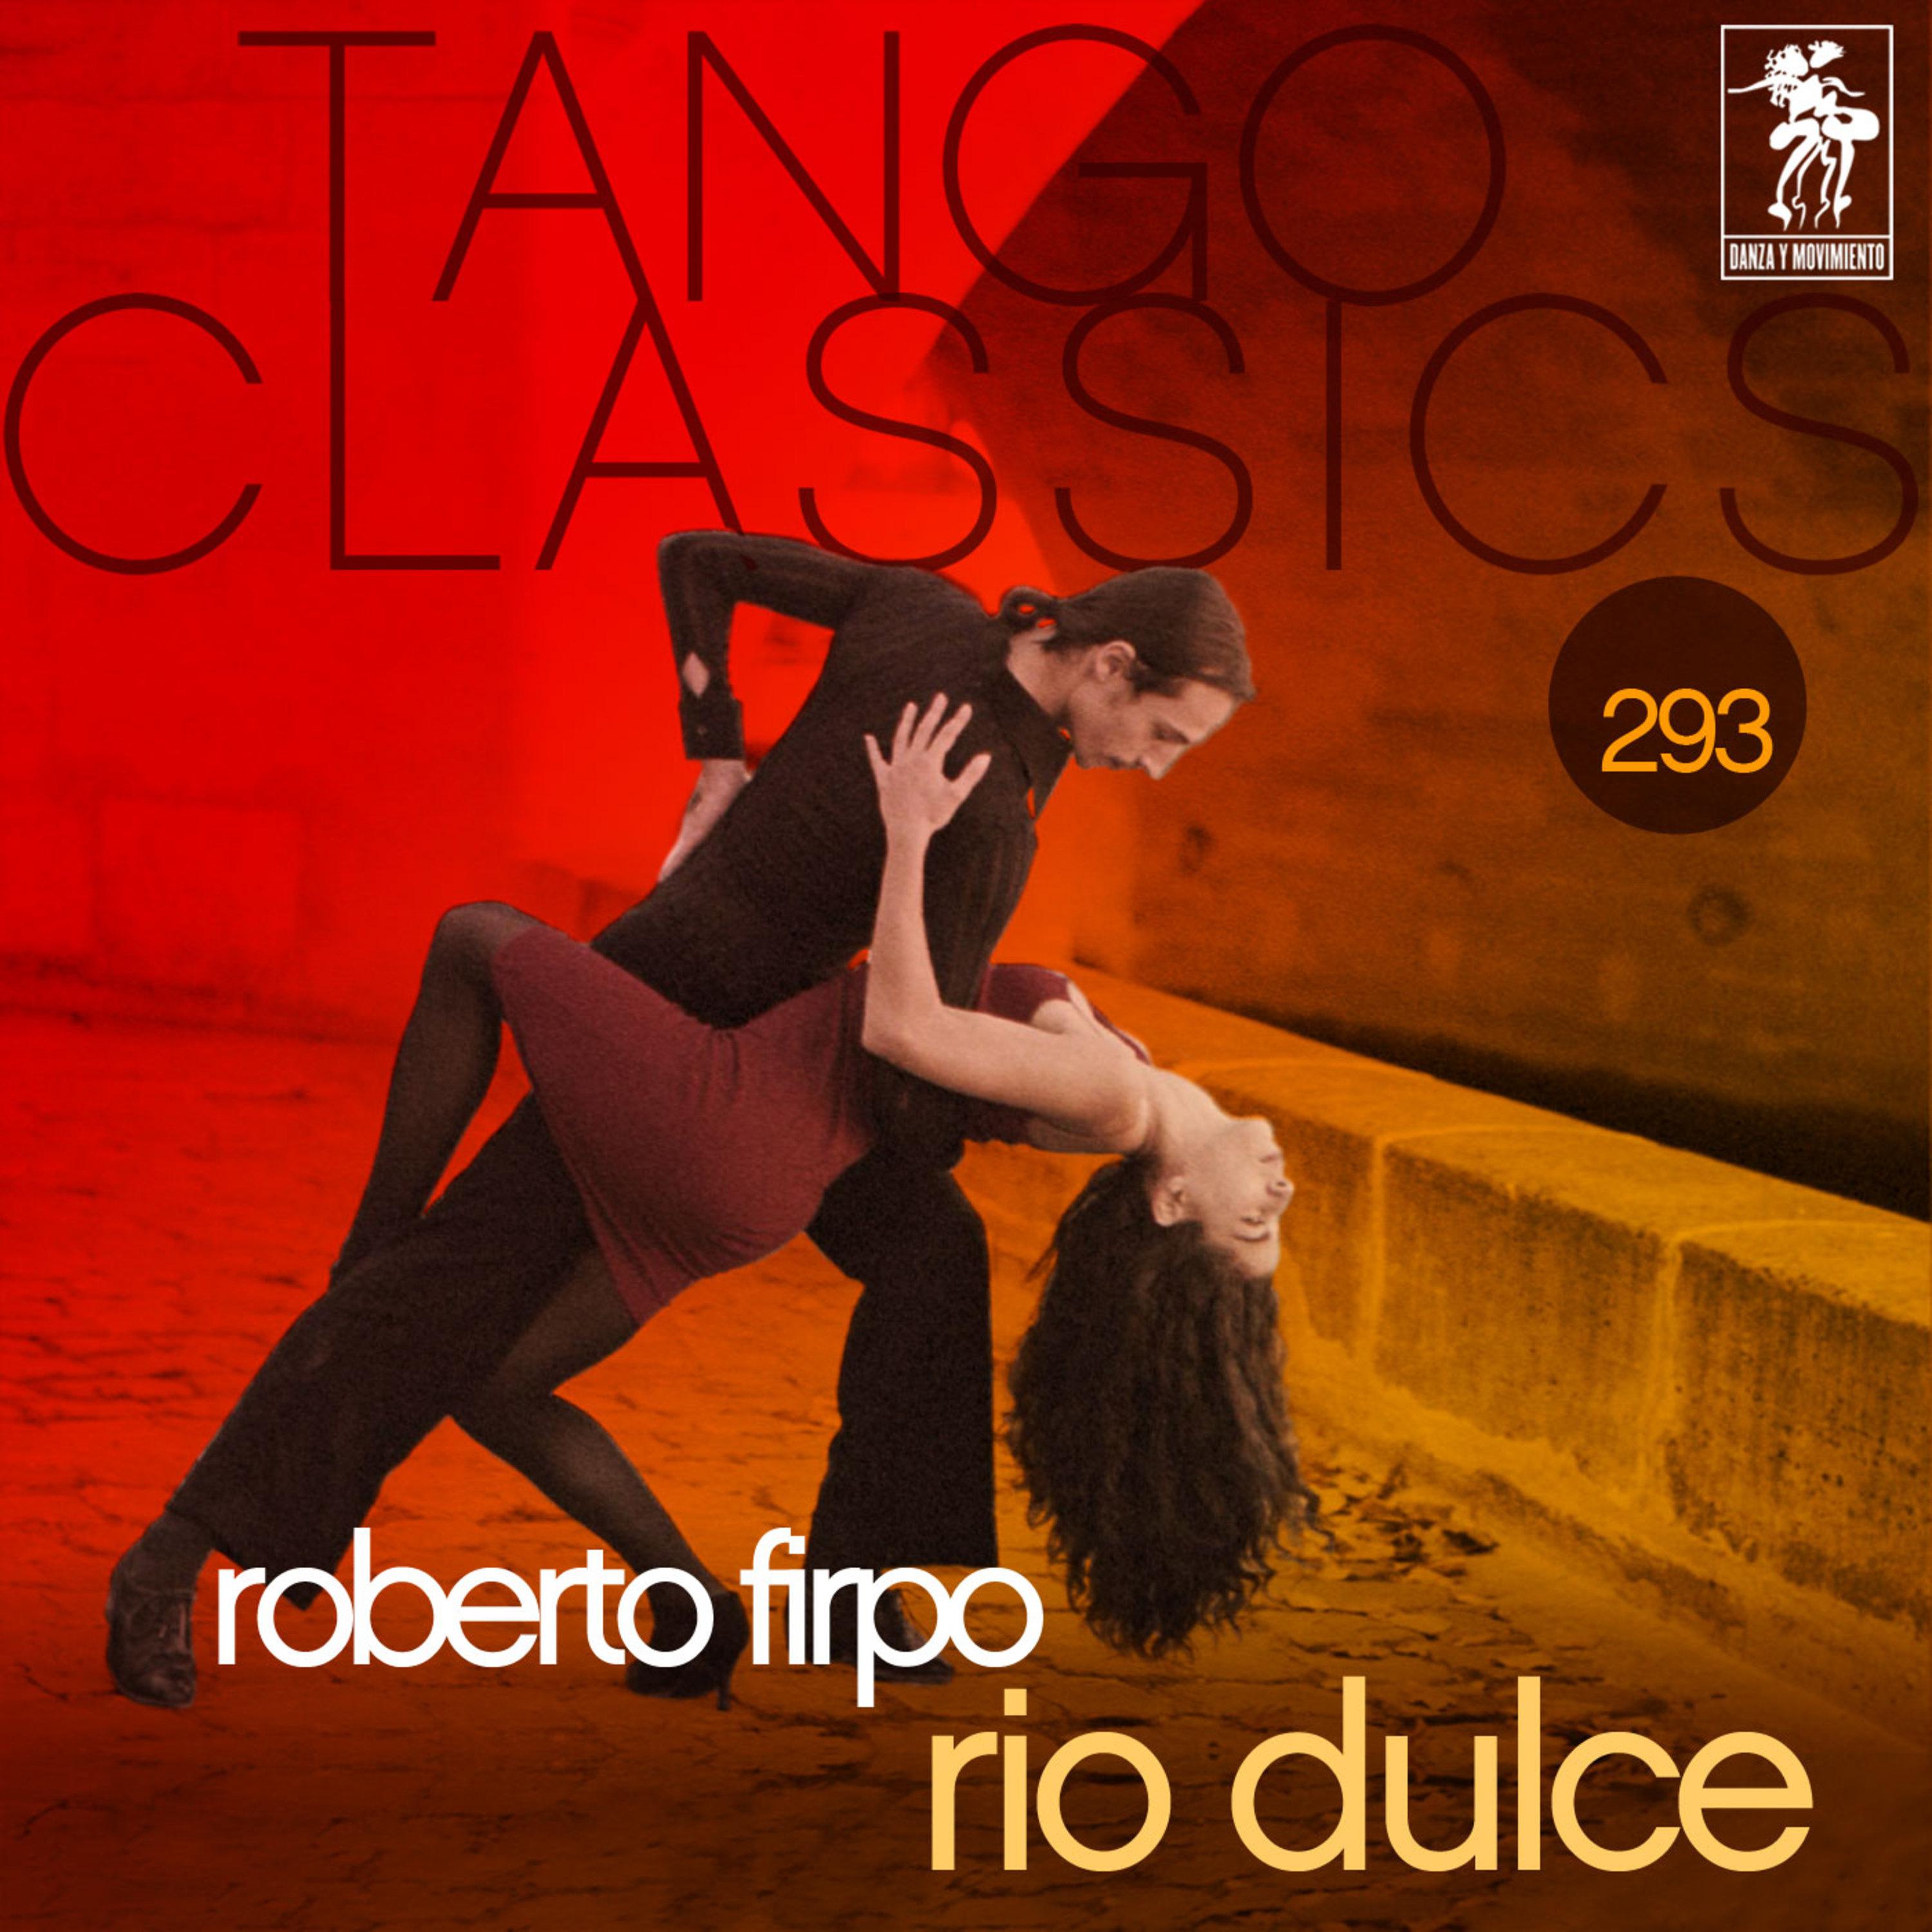 Tango Classics 293: Rio Dulce